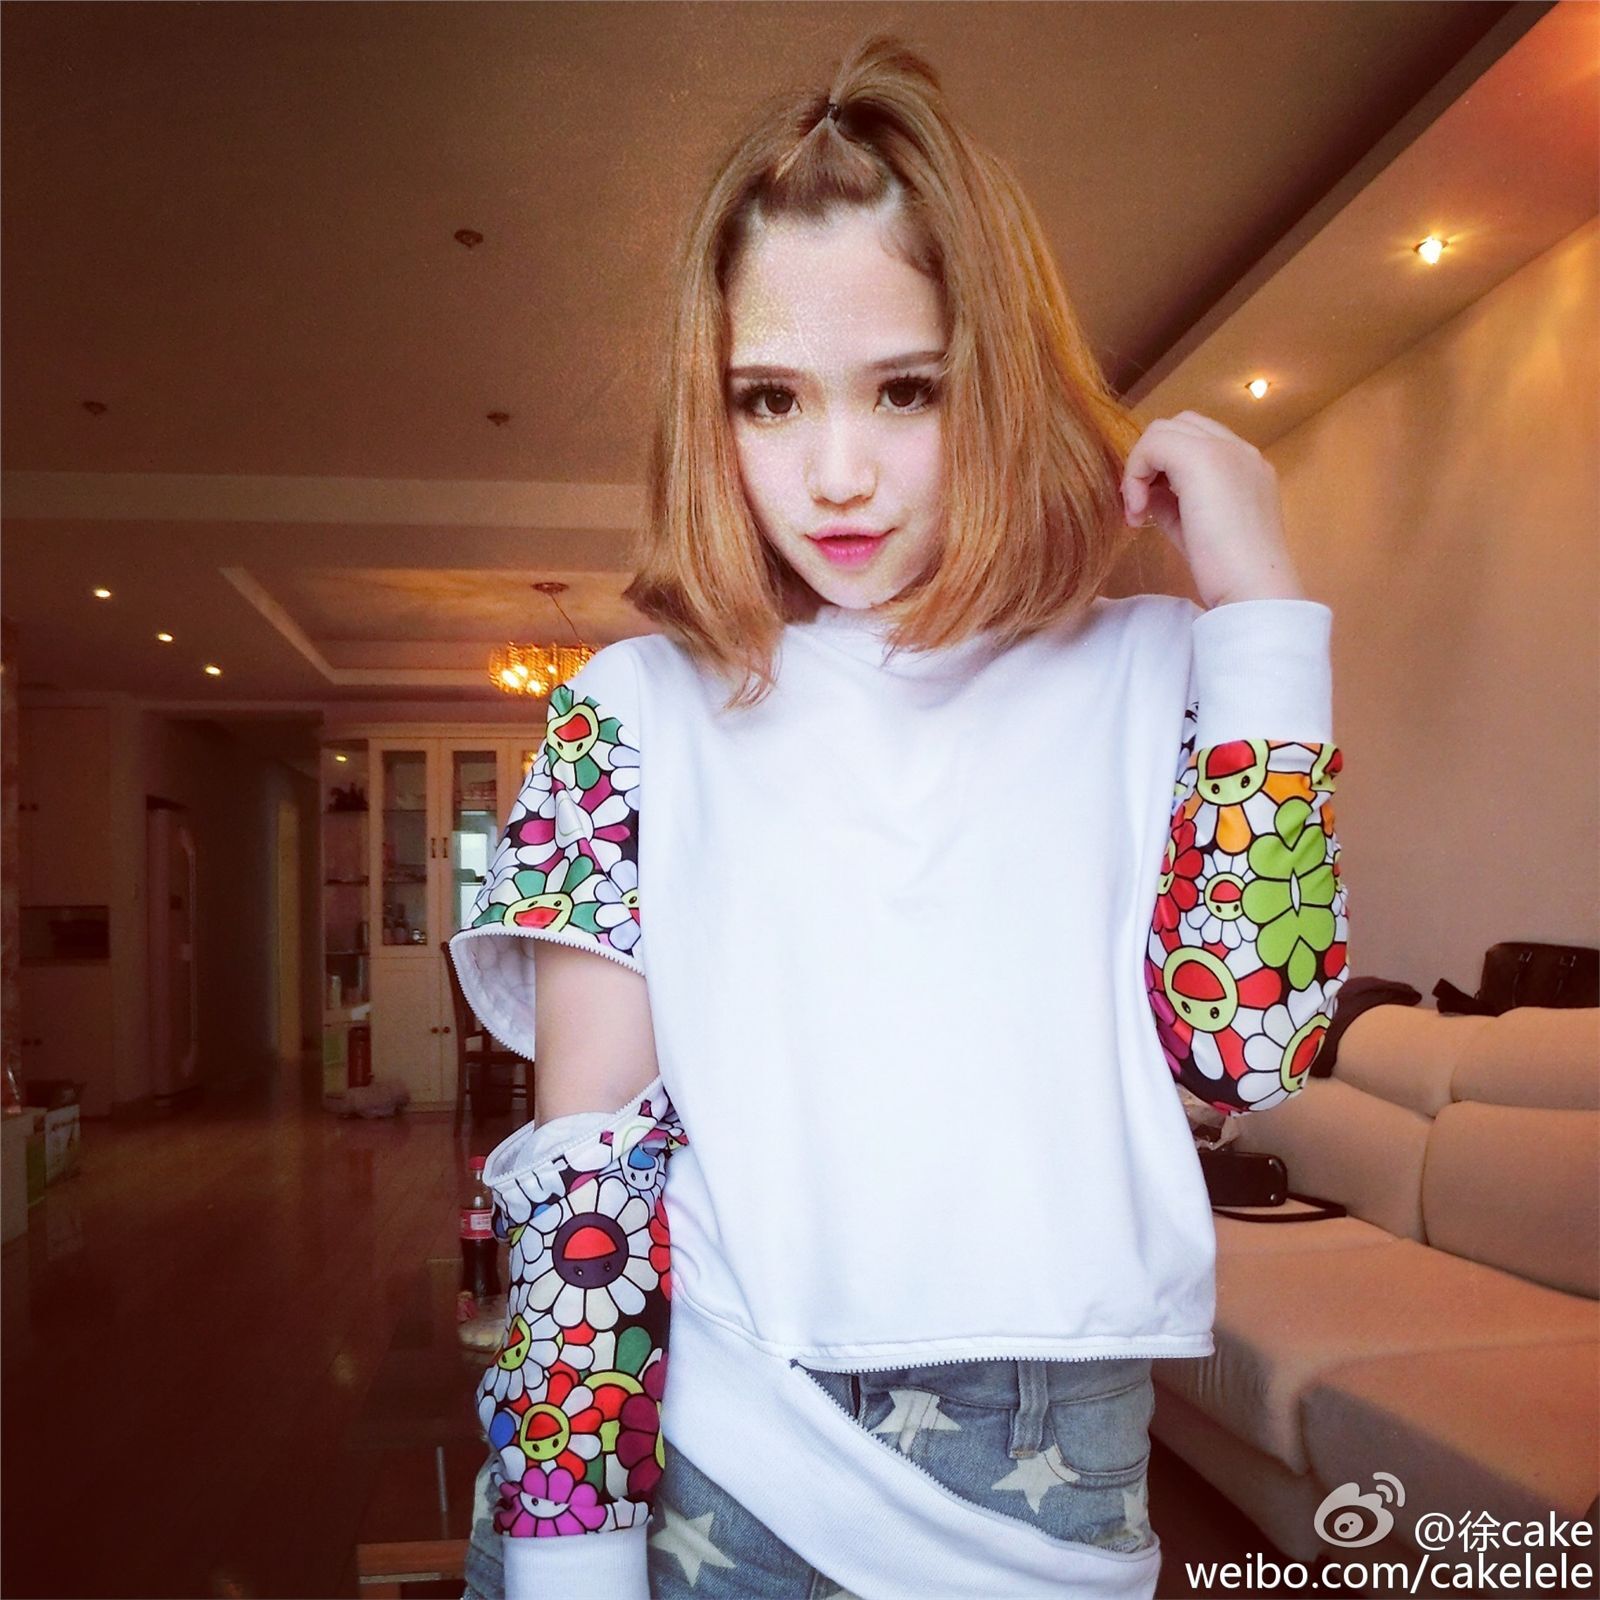 上海2015ChinaJoy模特艾西Ashley微博图集 1